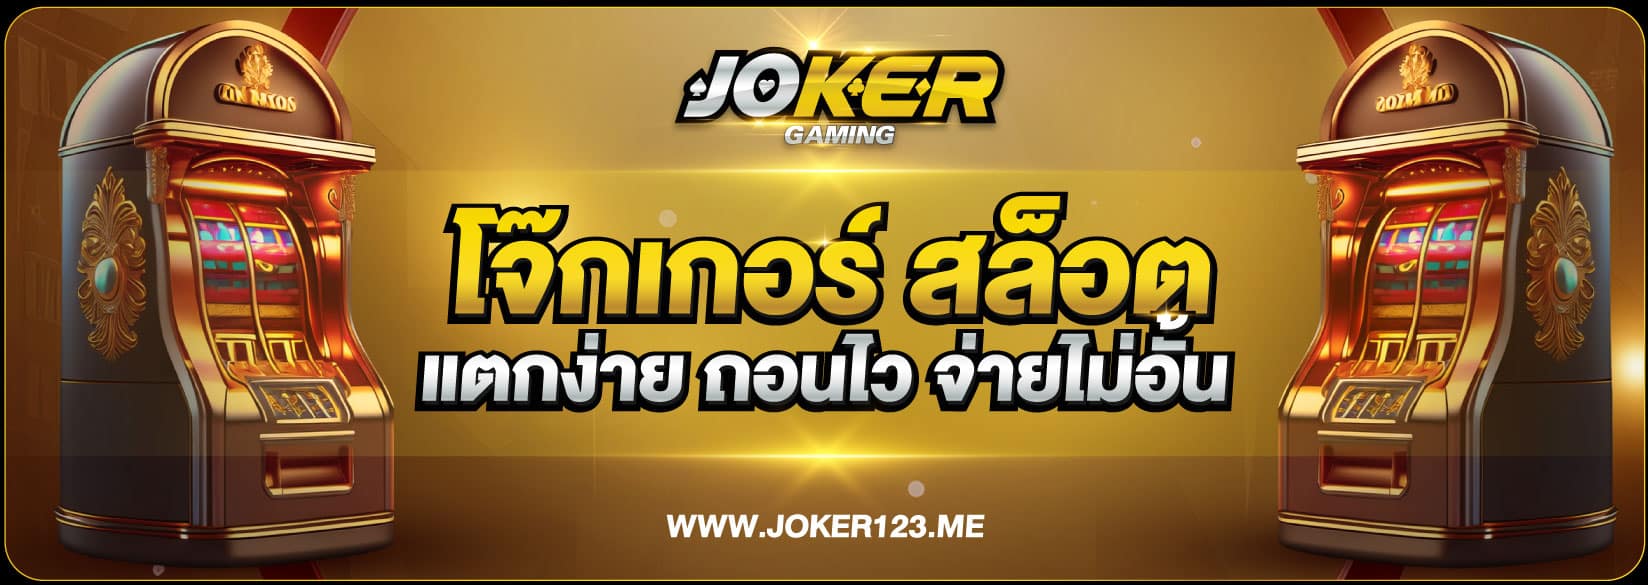 Joker banner